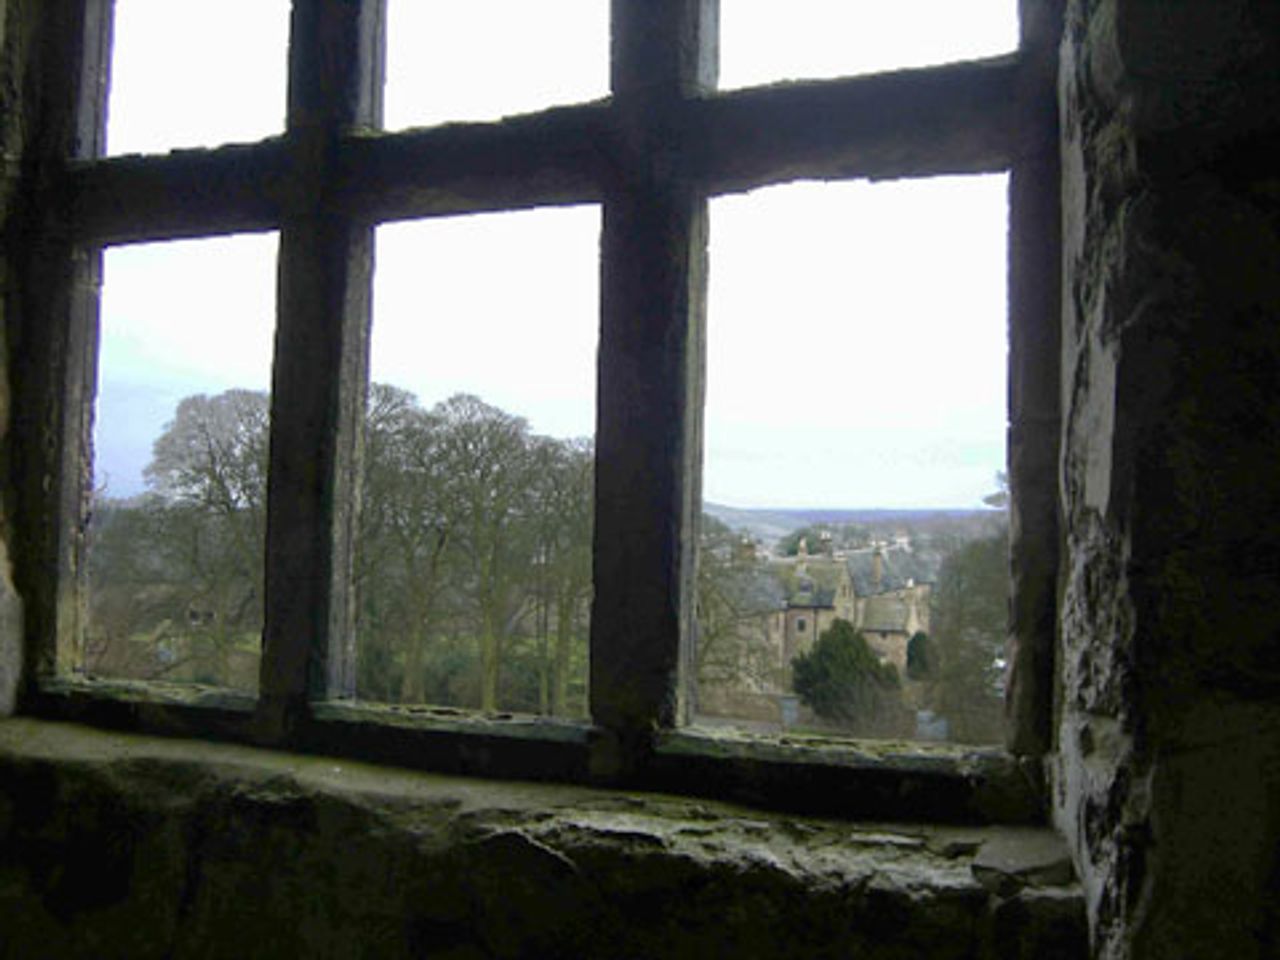 New Hardwick aus einem Fenster des Hauses Old Hardwick gesehen